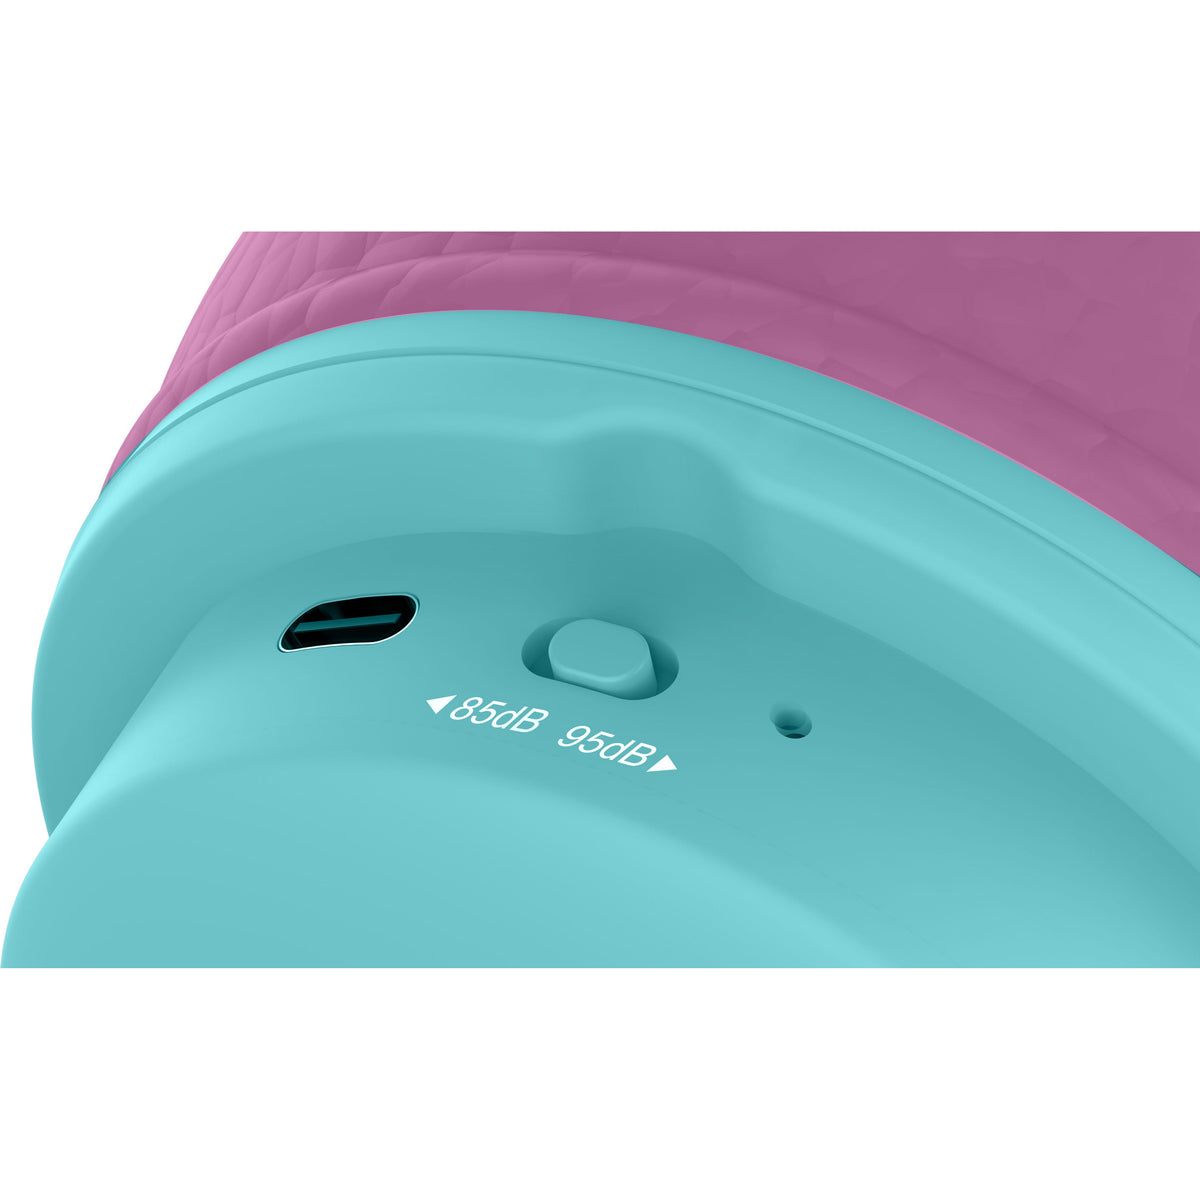 OTL LOL Surprise Kids On-Ear Wireless Headphone - Pink &amp; Blue | LOL979 from OTL - DID Electrical